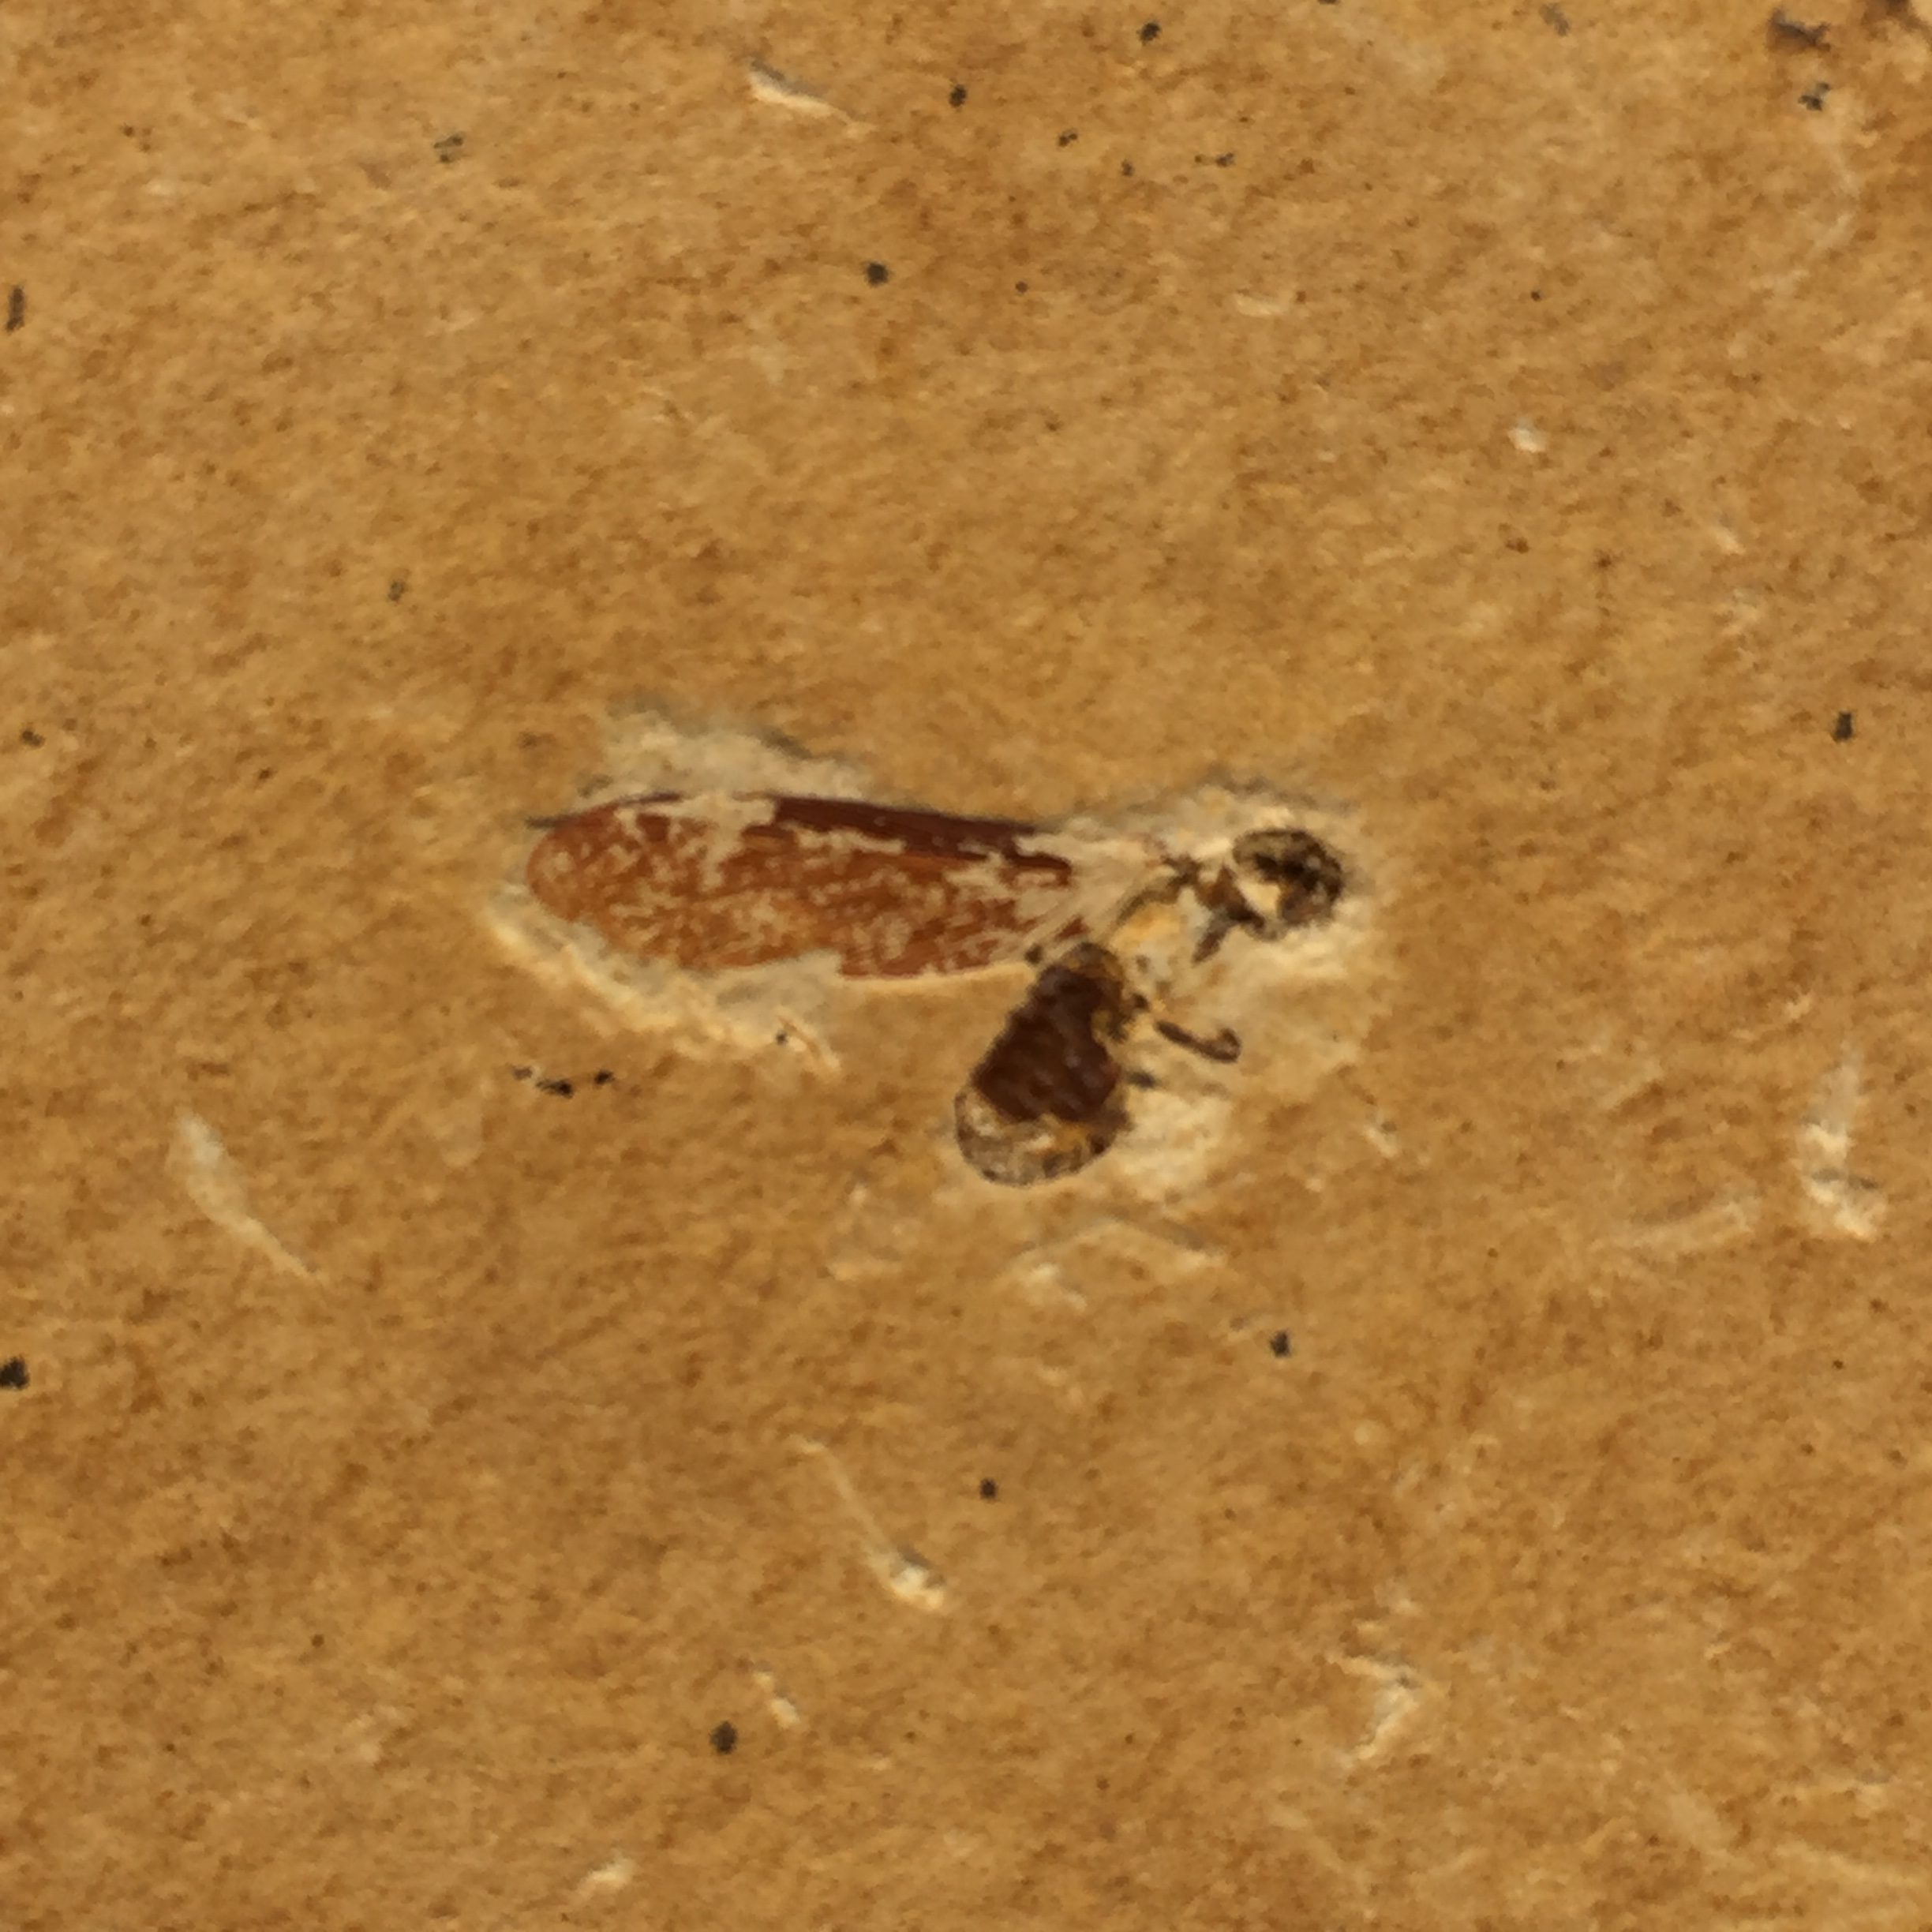 Insecte Fossile du Brésil gisement de crato (réf is1)